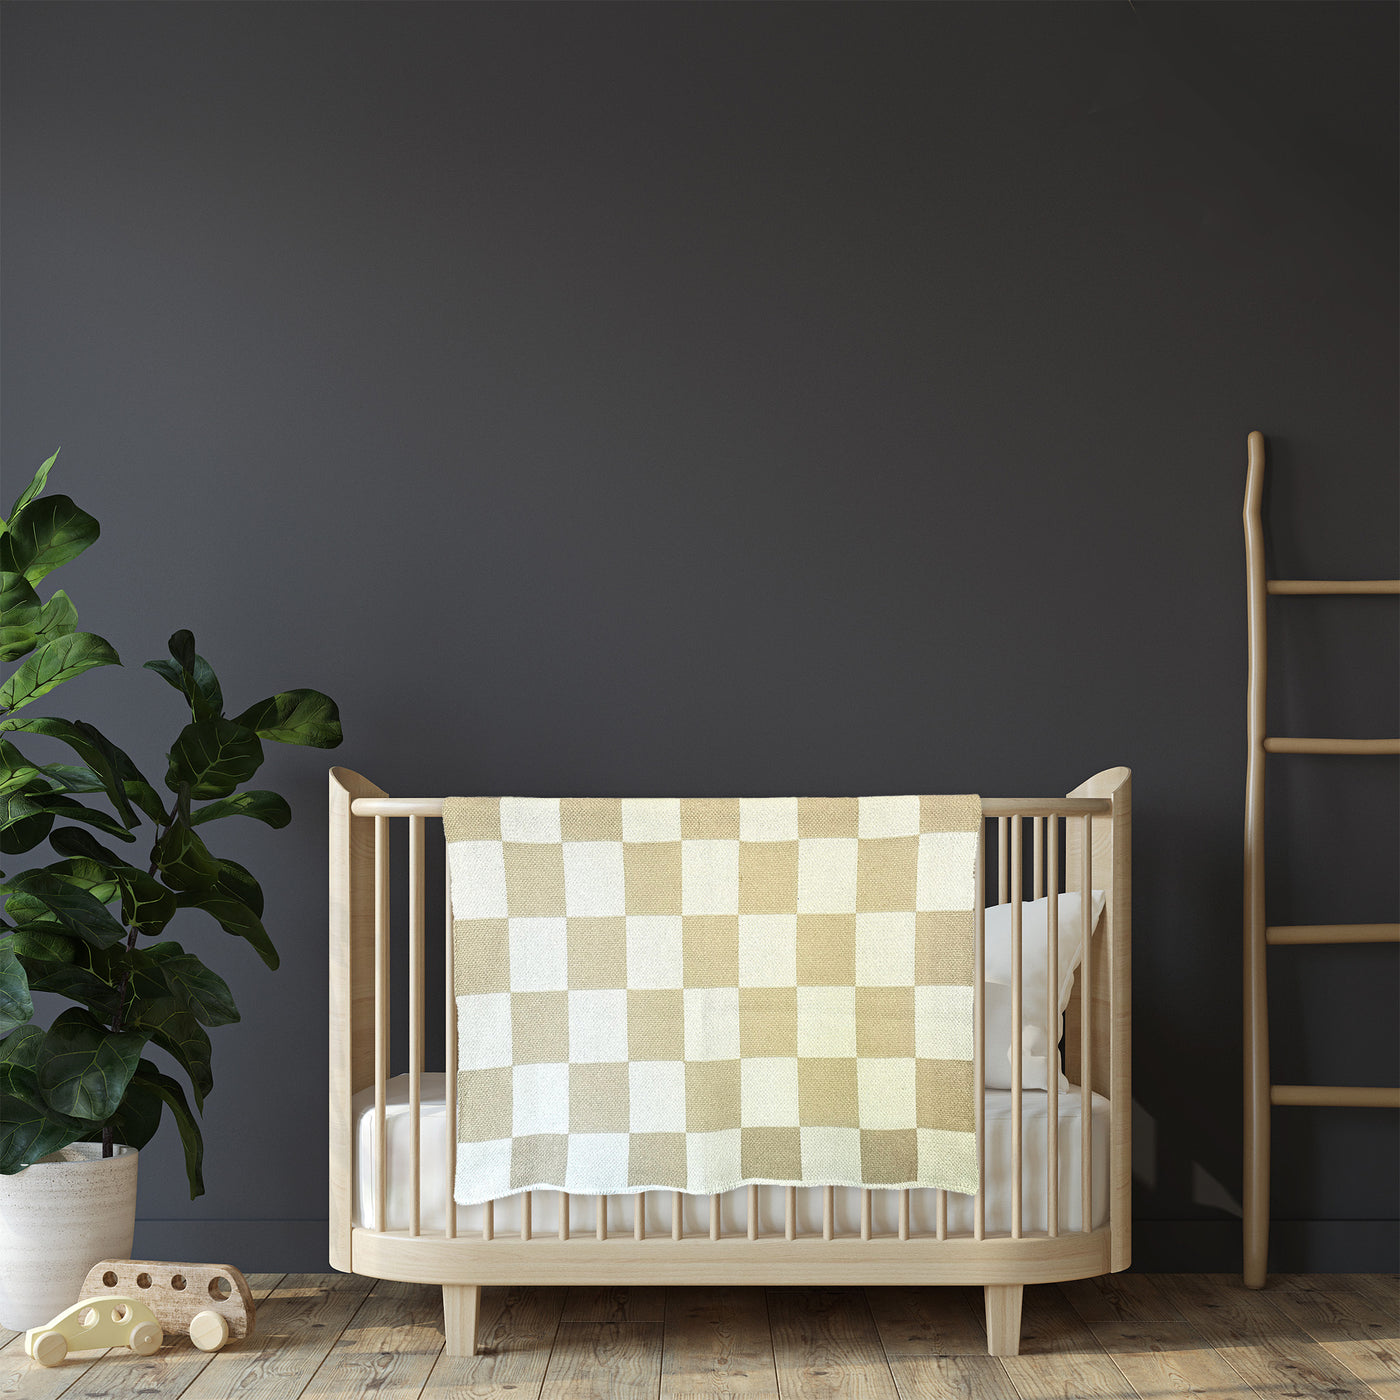 Beige Checkered Baby Blanket on a Crib on Dark Nursery